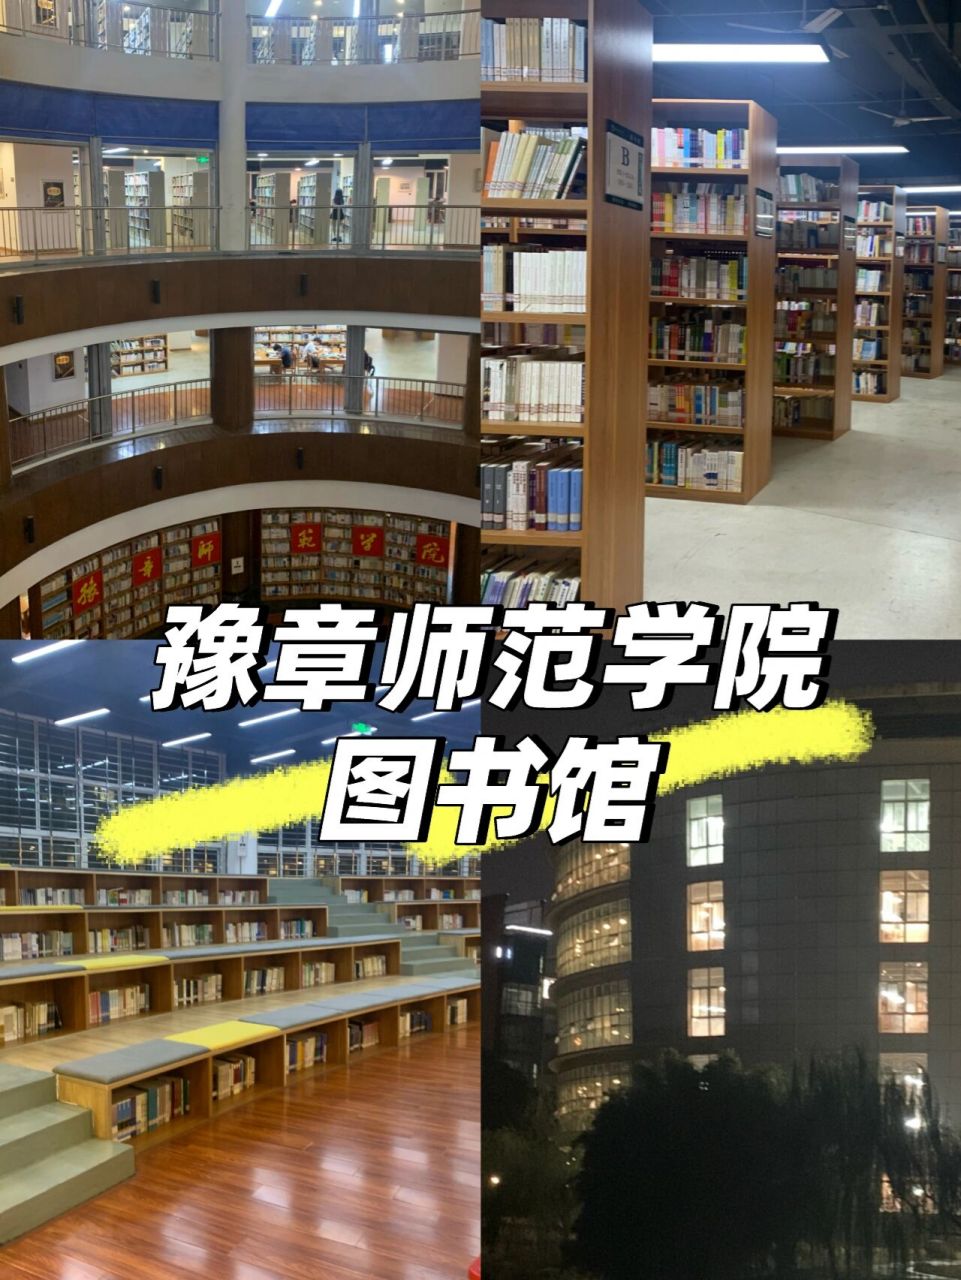 豫章师范学院图书馆 今天咱们看看图书馆